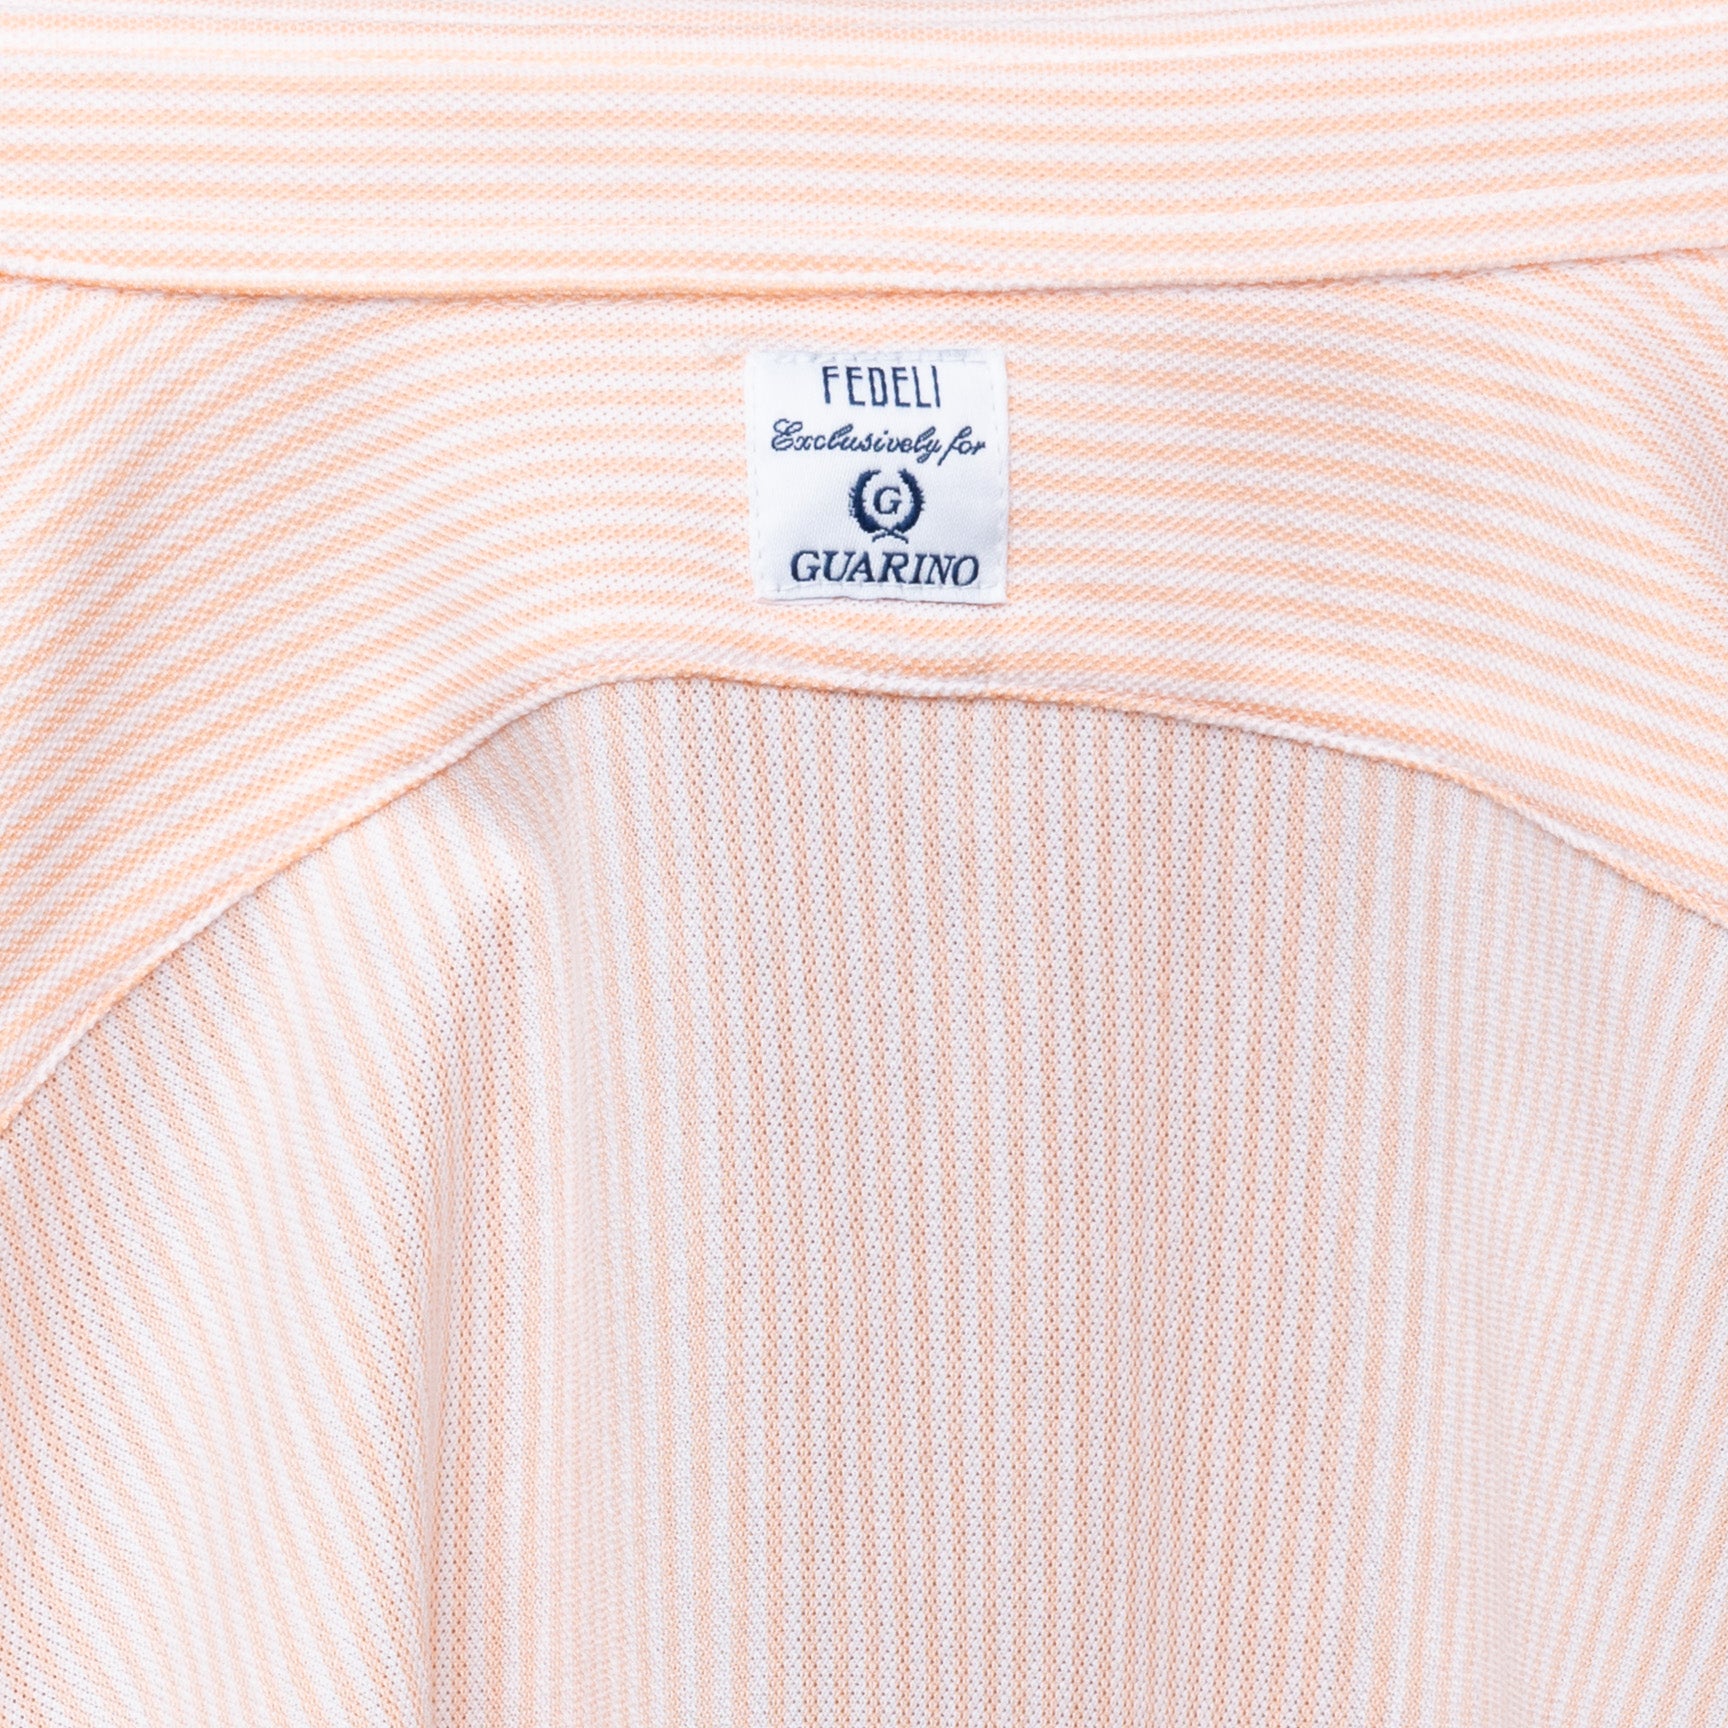 FEDELI "Kaos" Orange Striped Cotton Light Oxford Pique Polo Shirt 54 NEW XL Slim FEDELI